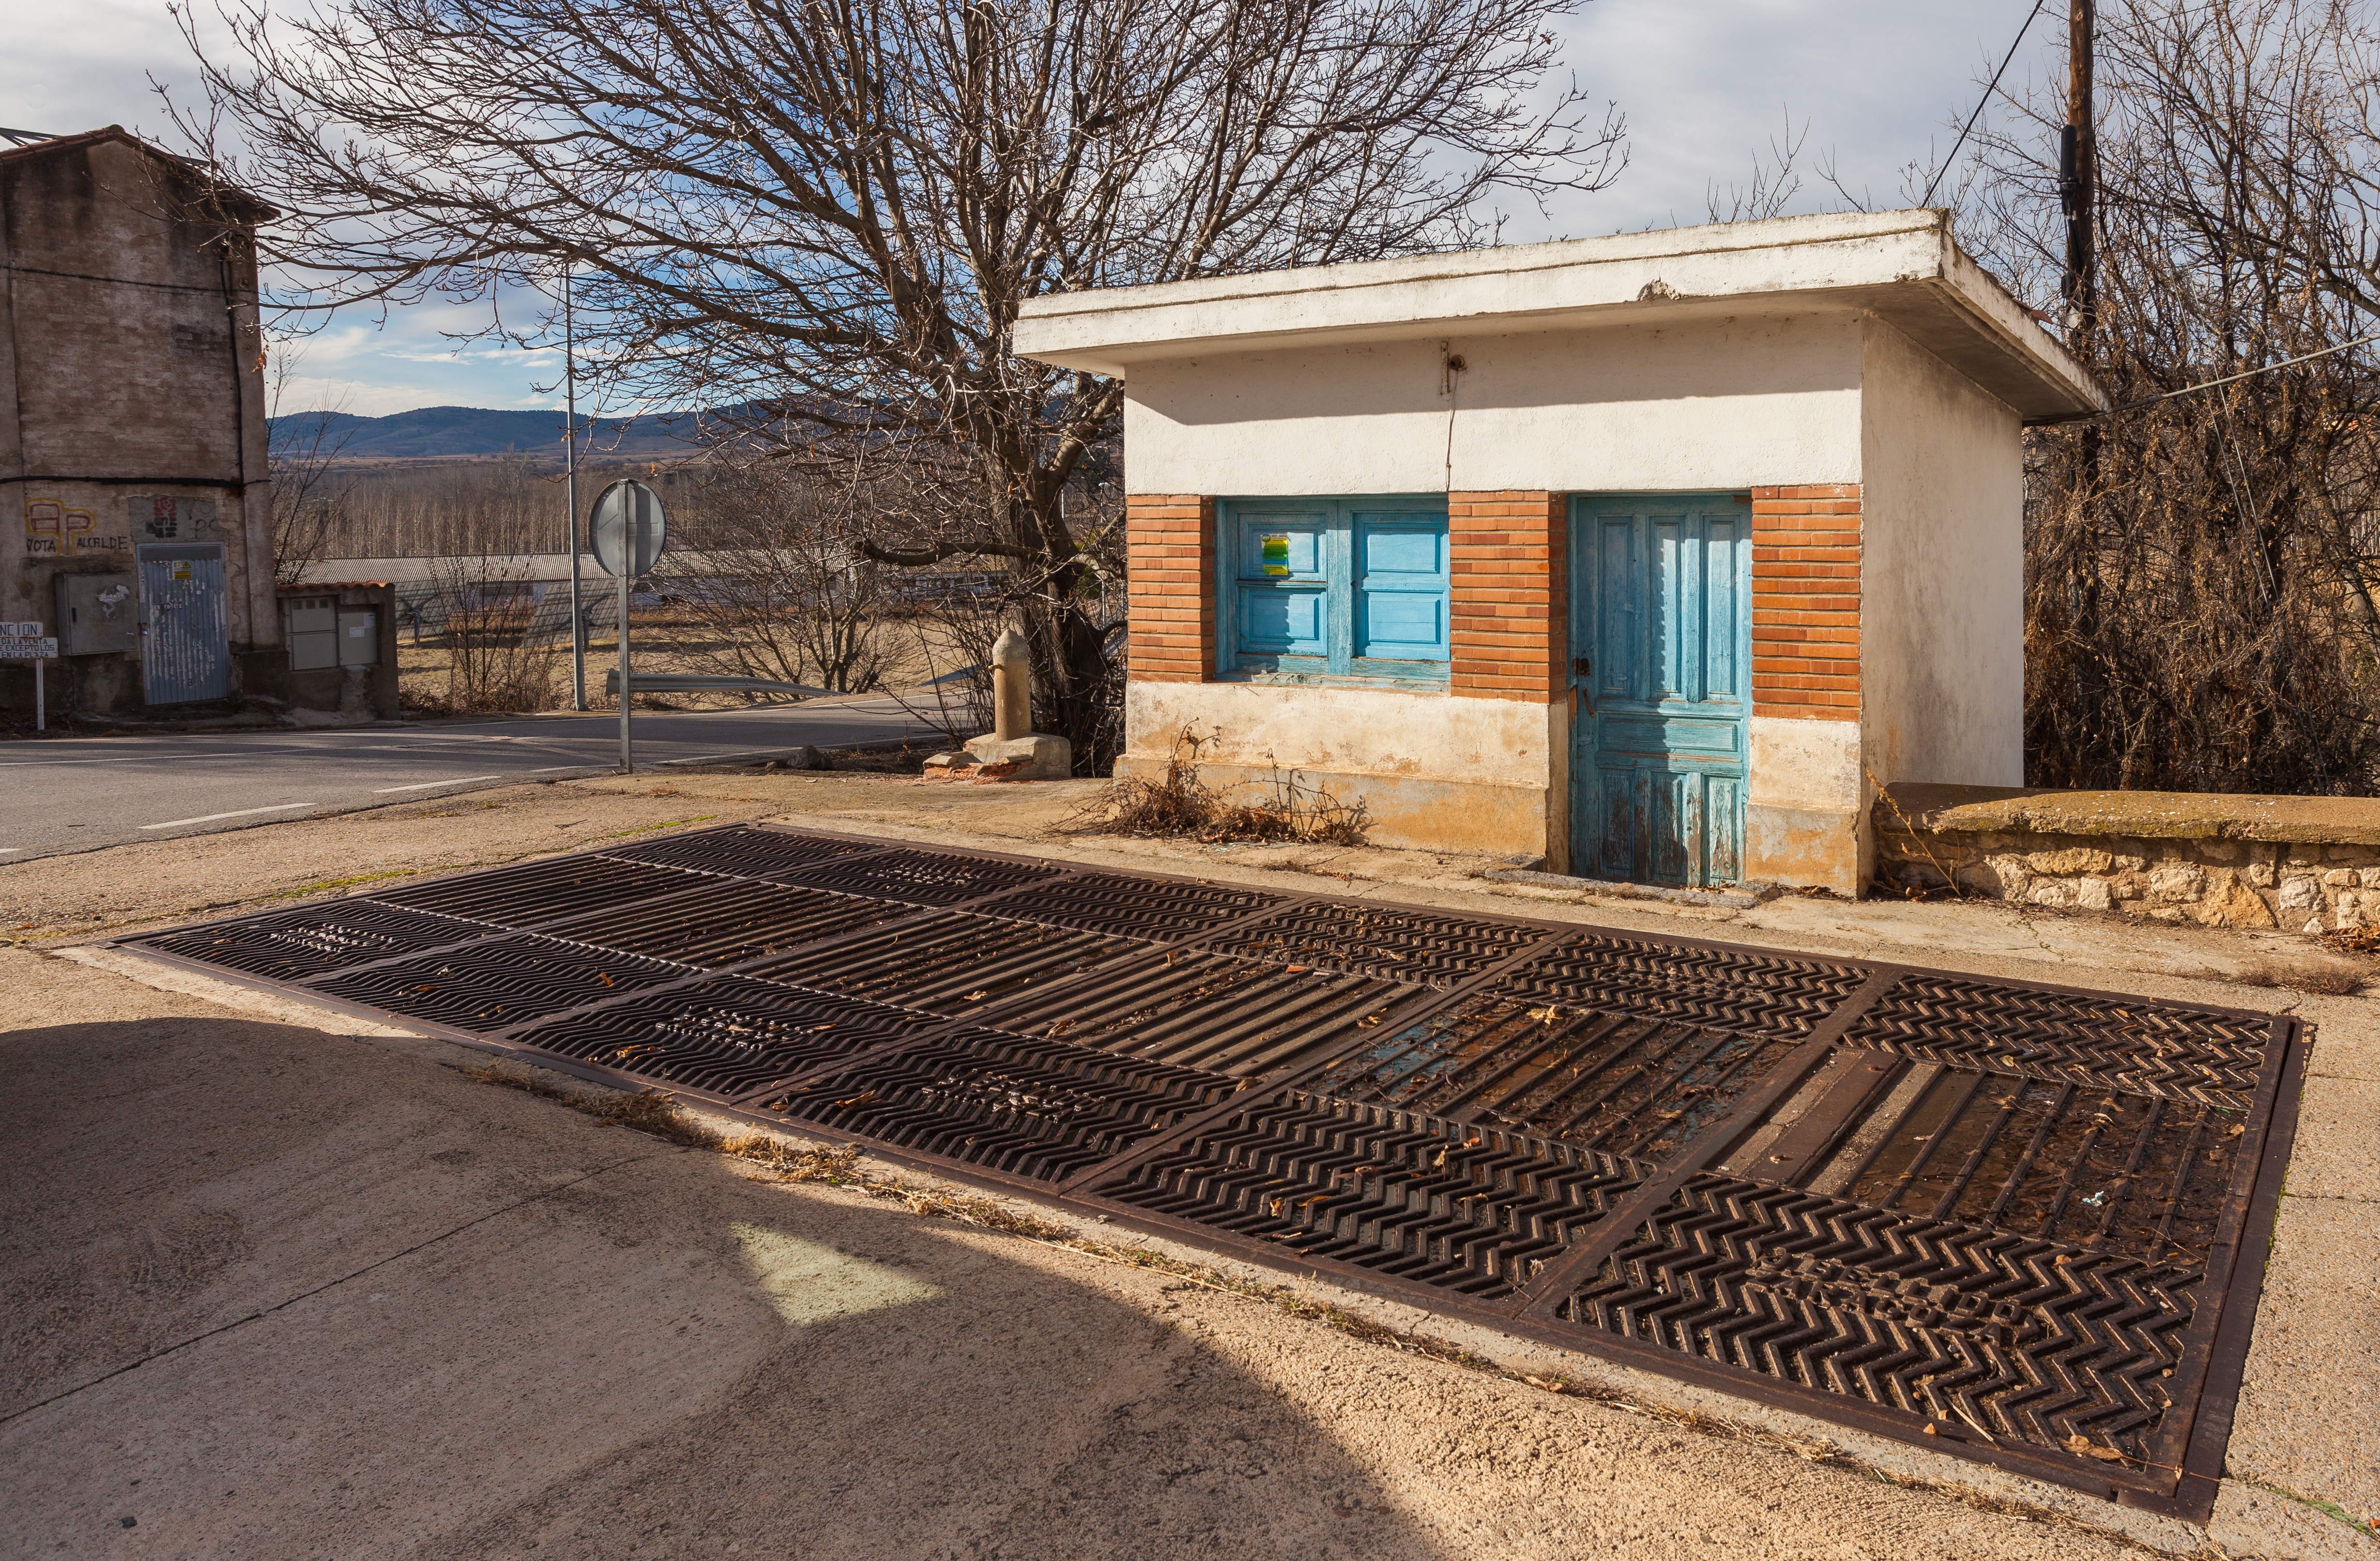 Báscula, San Martín del Río, Teruel, España, 2014-01-08, DD 02